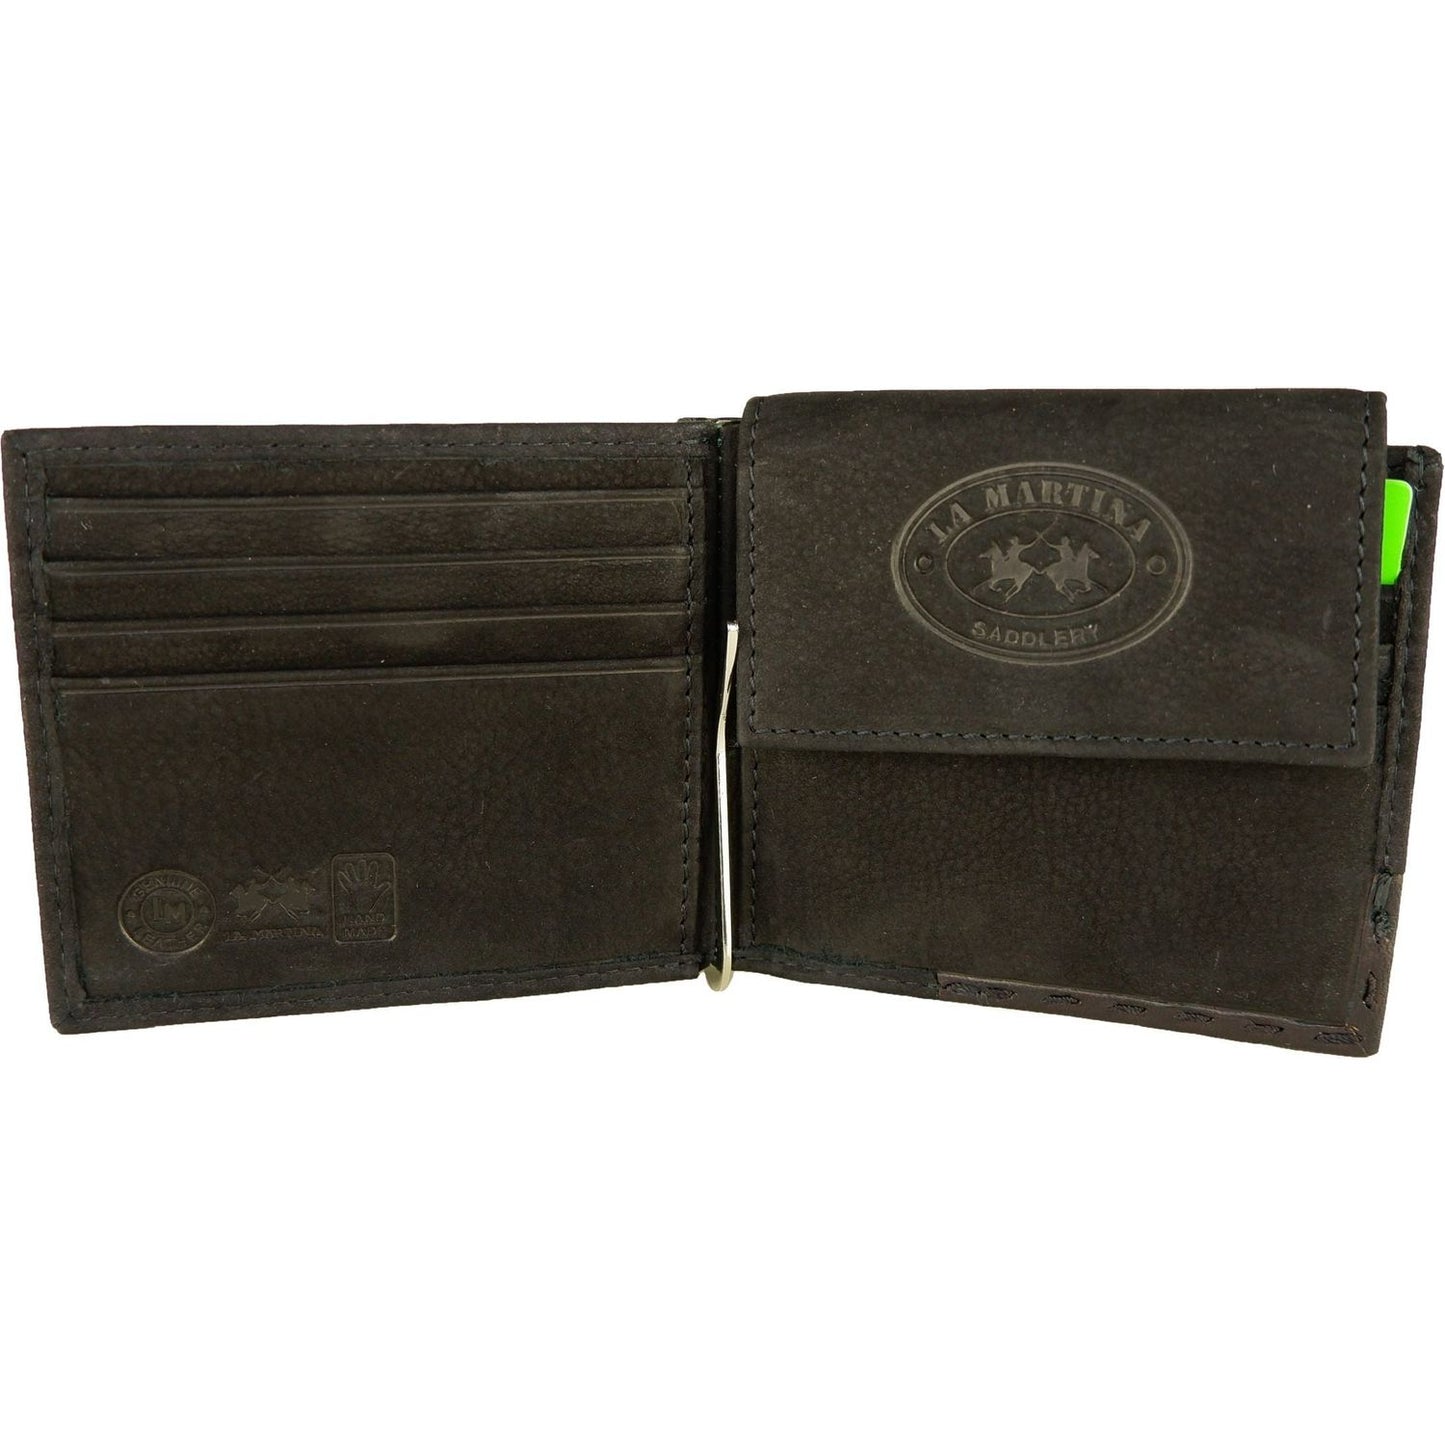 La Martina Elegant Black Leather Wallet for Men black-leather-wallet product-6701-34509375-scaled-78f67fbf-7ff.jpg